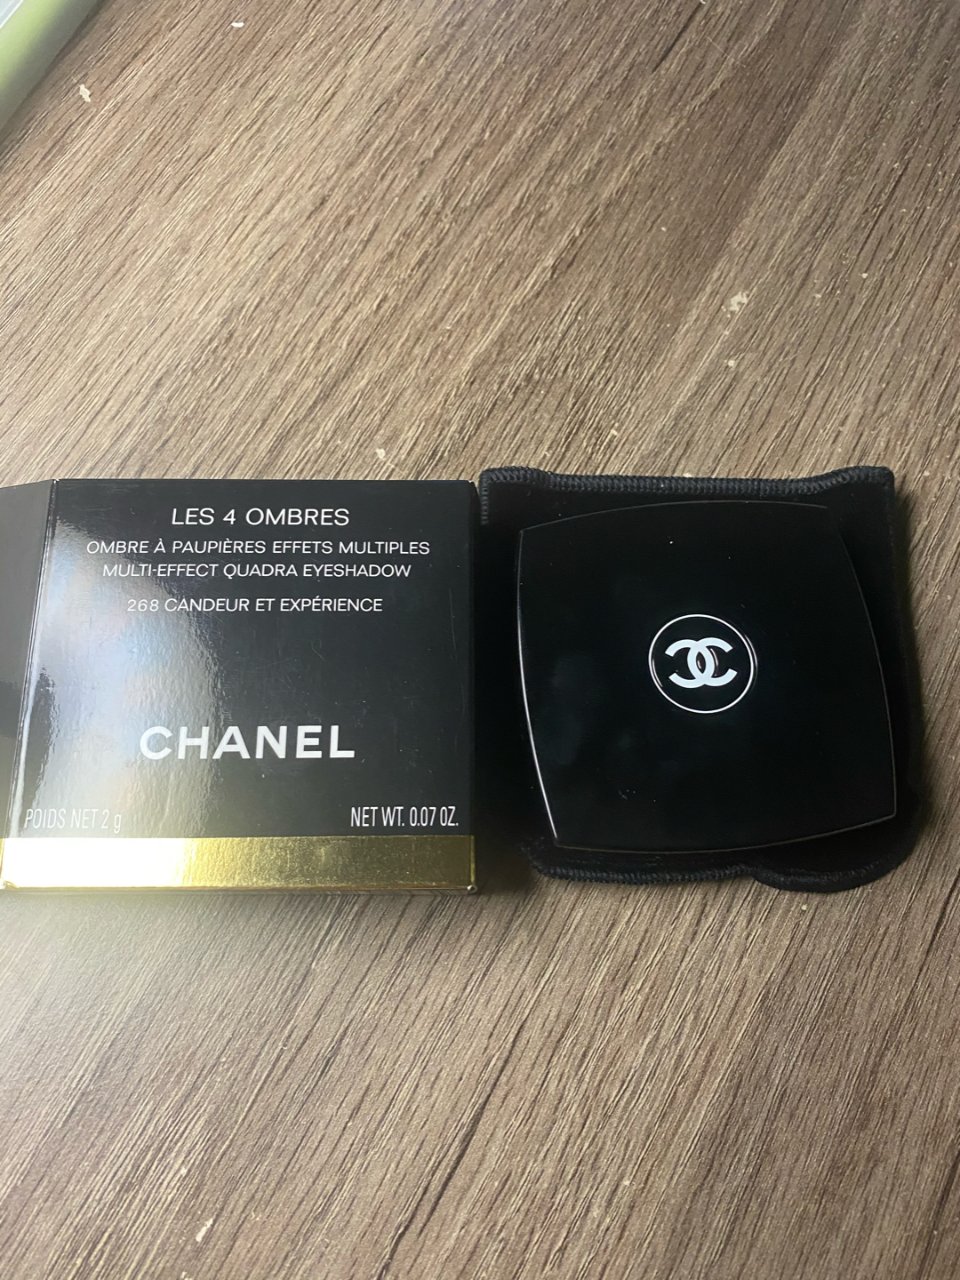 Chanel beauty